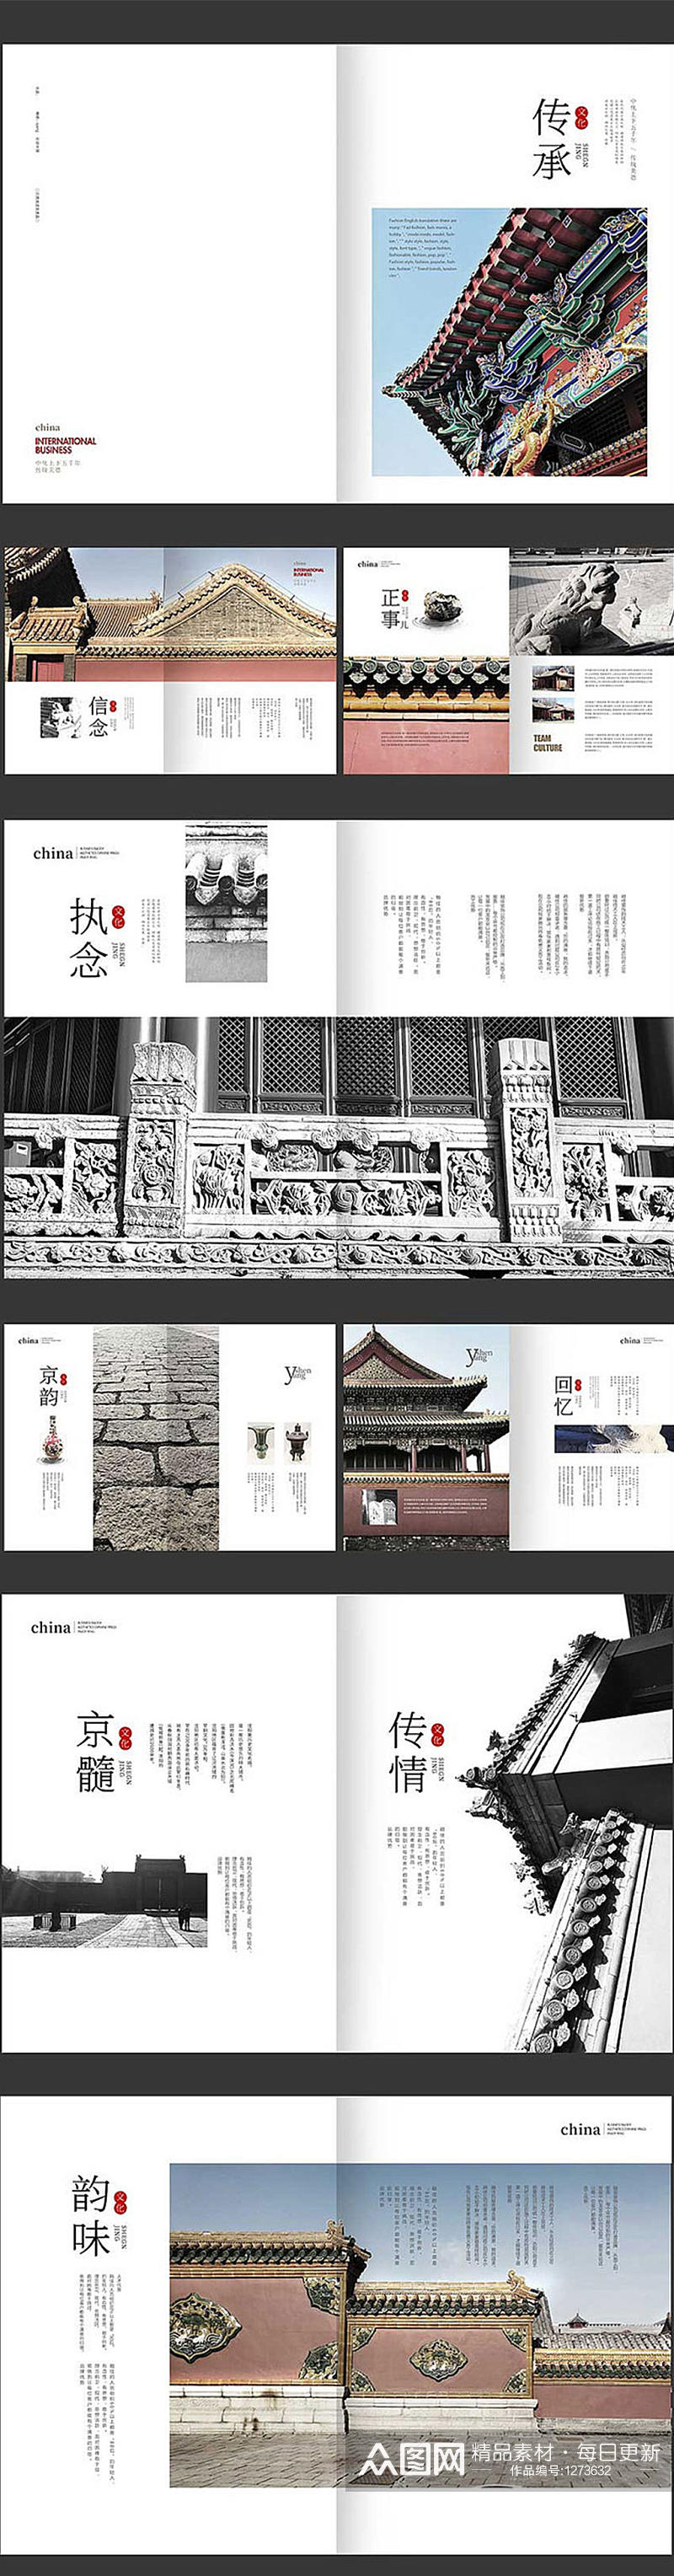 中国风古典传统画册素材